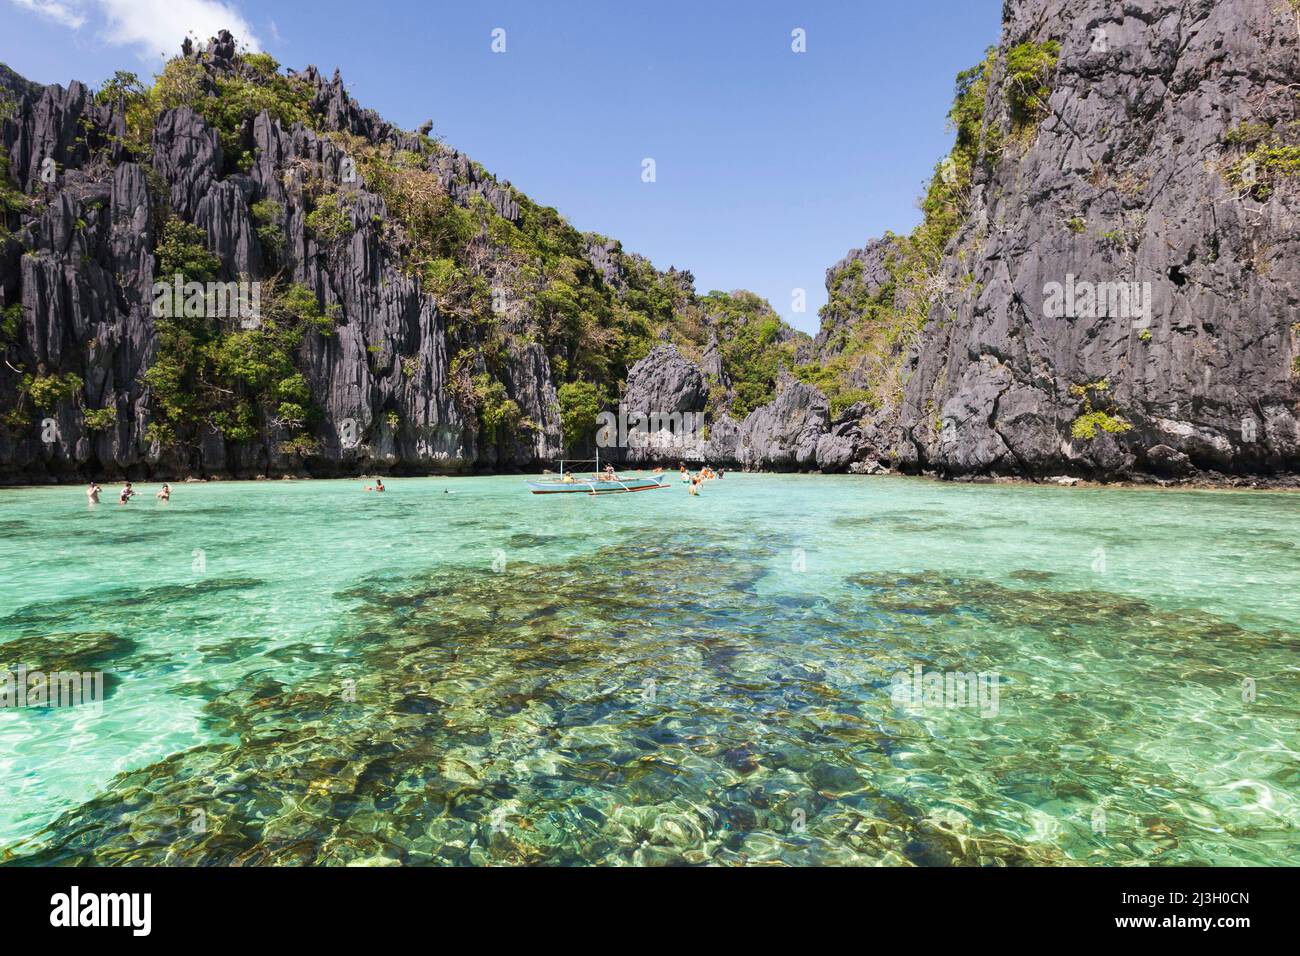 Philippinen, Palawan, El Nido, Bacuit-Archipel, Touristen, die vor der Insel Miniloc in transparentem Wasser baden Stockfoto